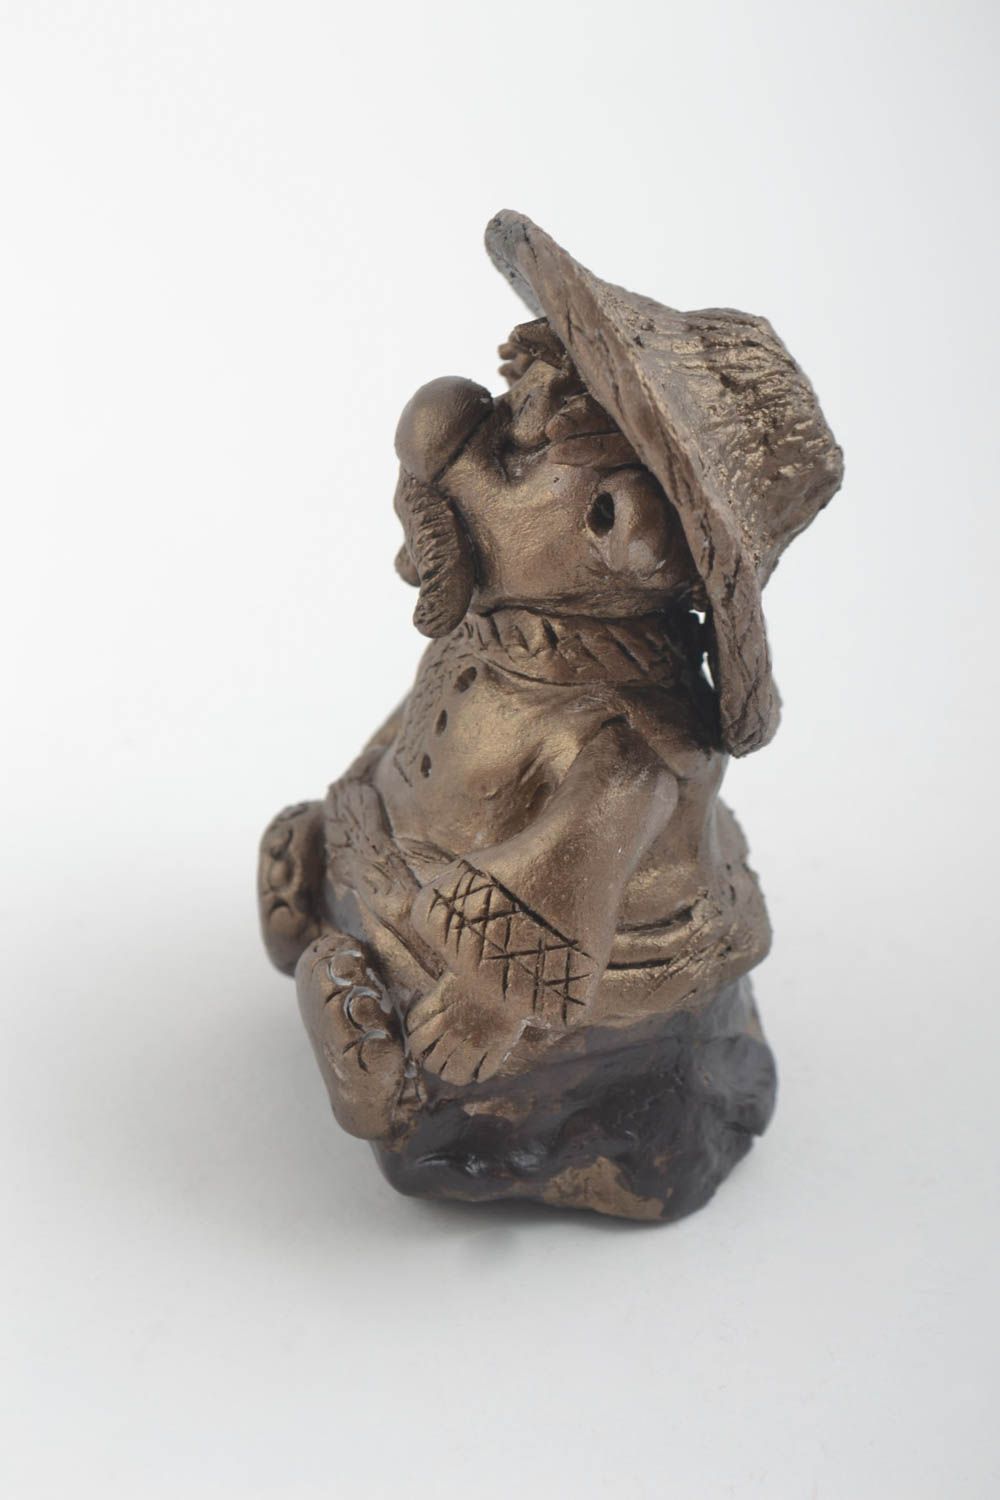 Статуэтка глиняная скульптура ручной работы фигурка мужчины оригинальная фото 2